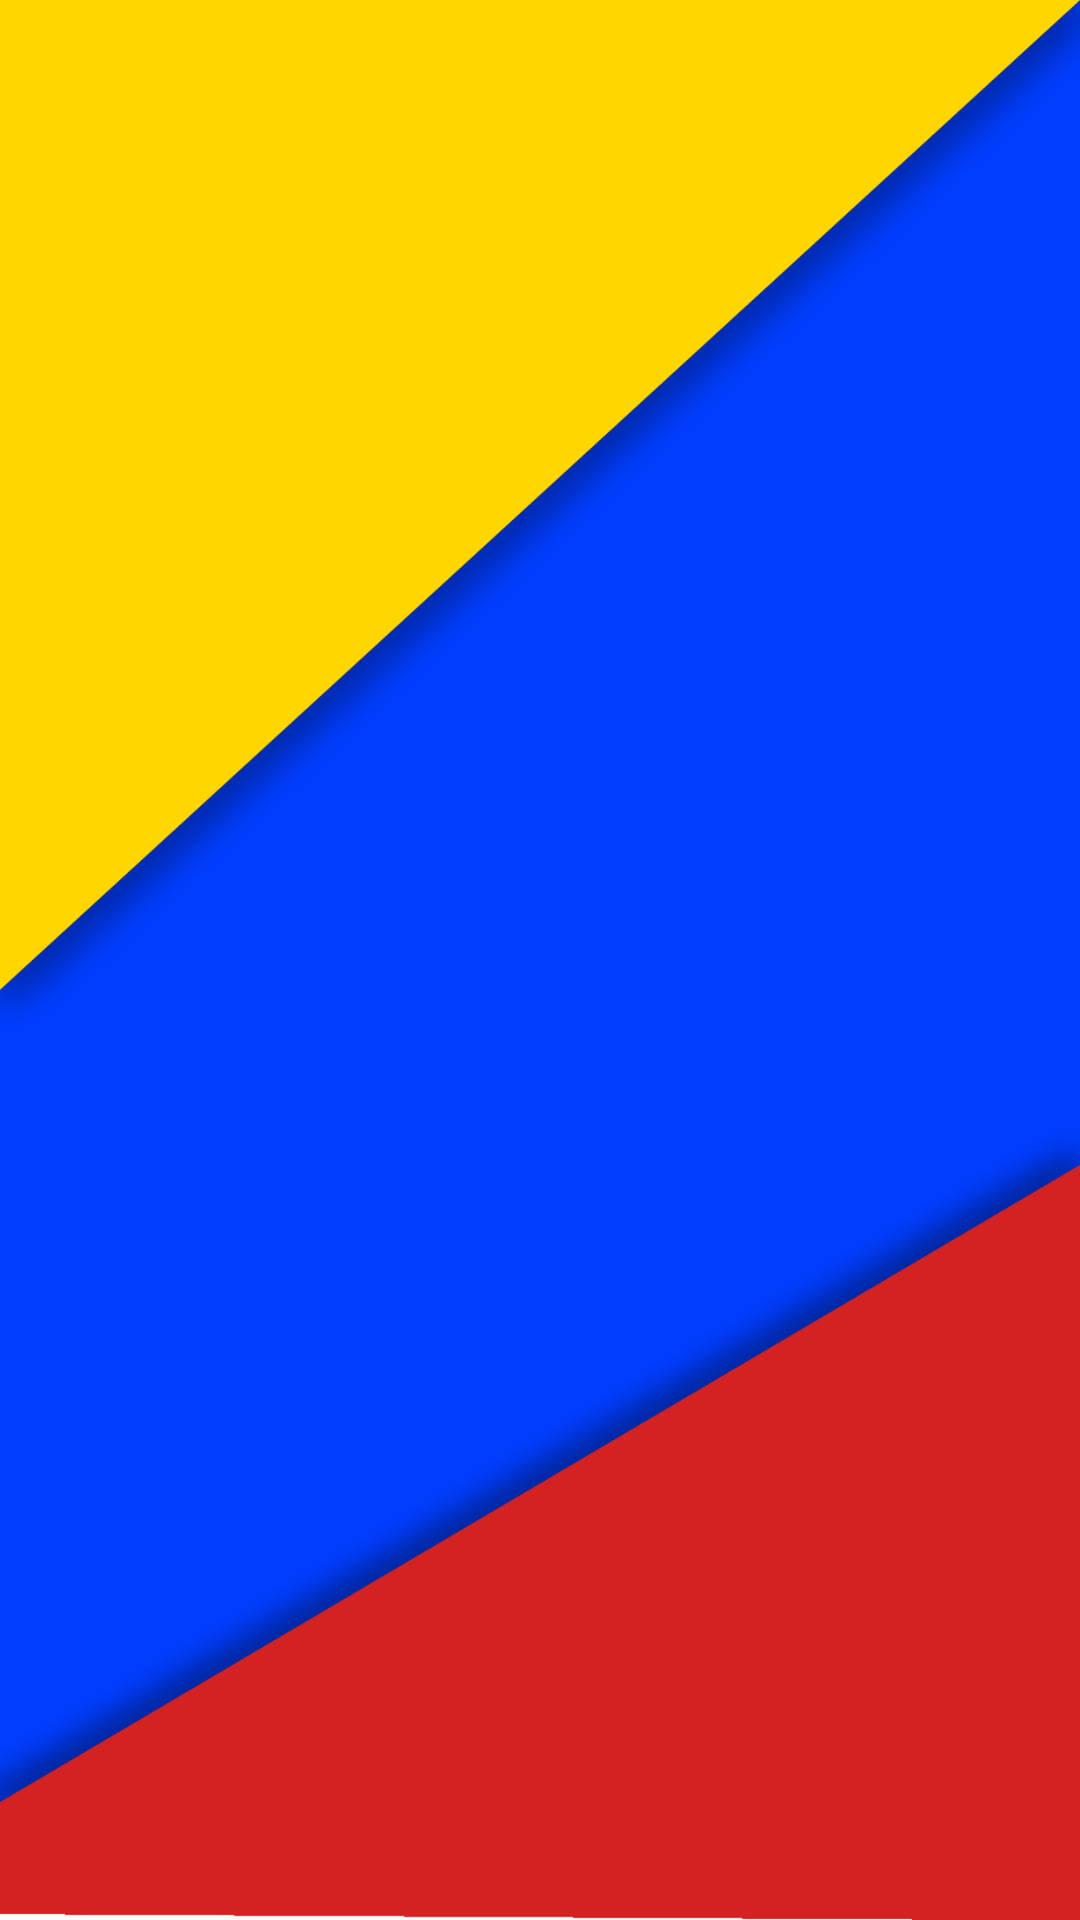 Banderade Colombia Vibrante Fondo de pantalla